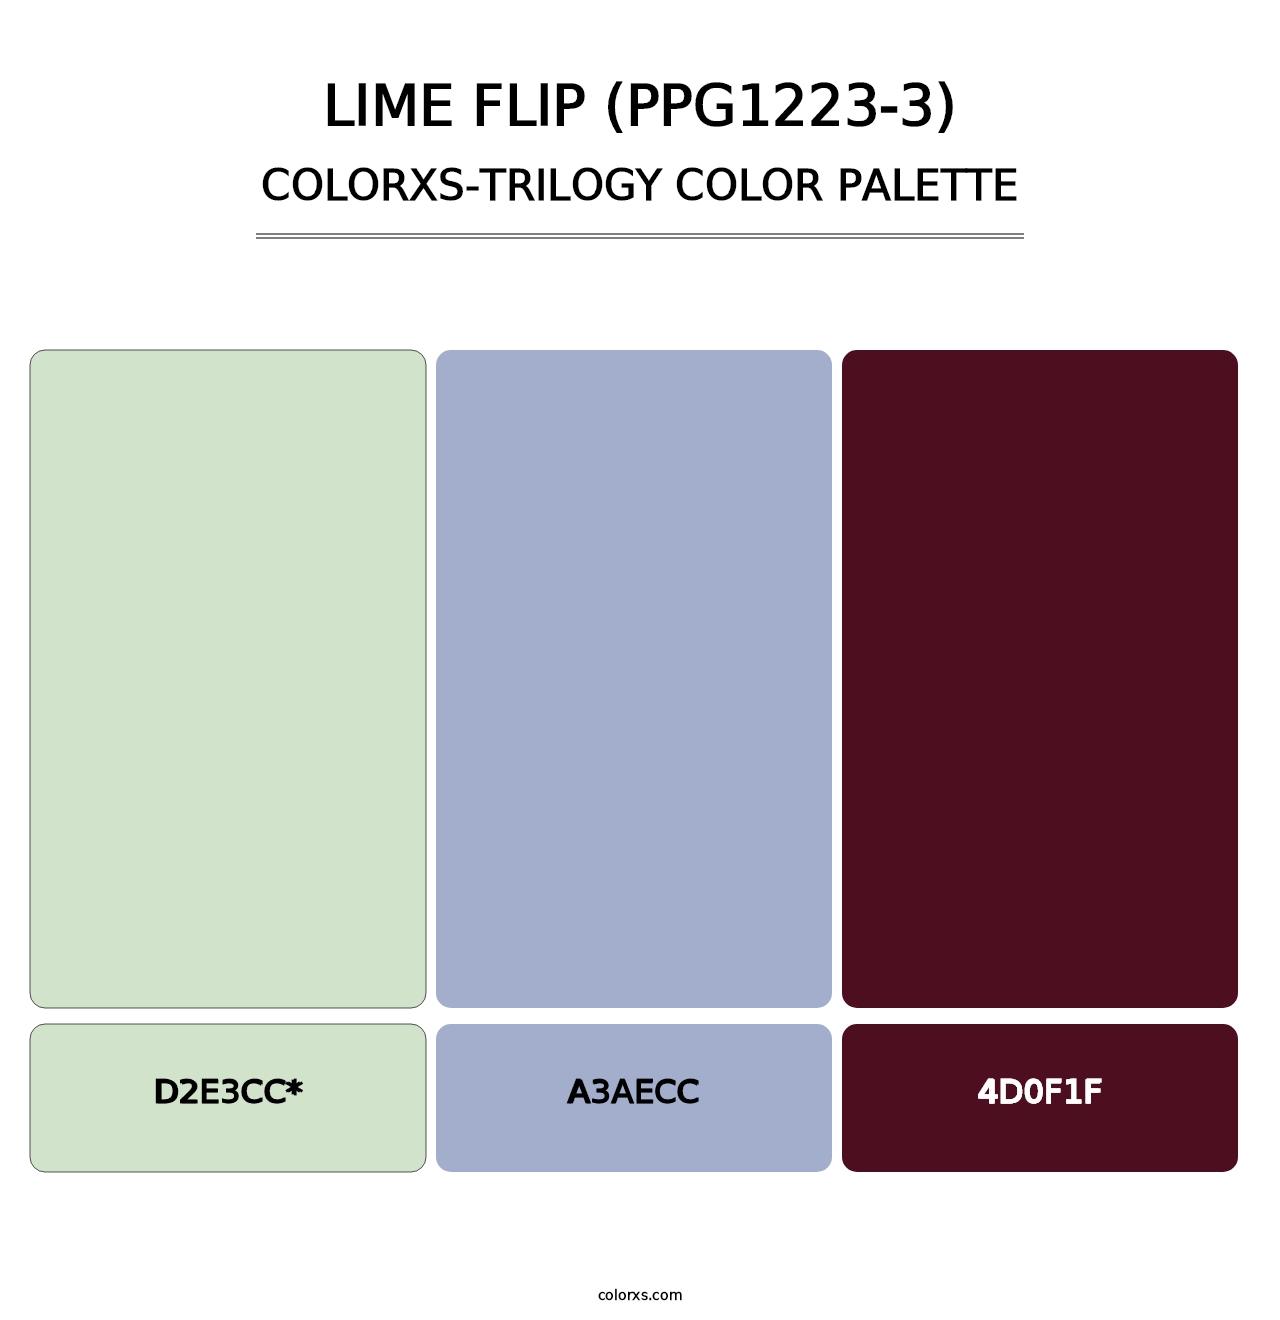 Lime Flip (PPG1223-3) - Colorxs Trilogy Palette